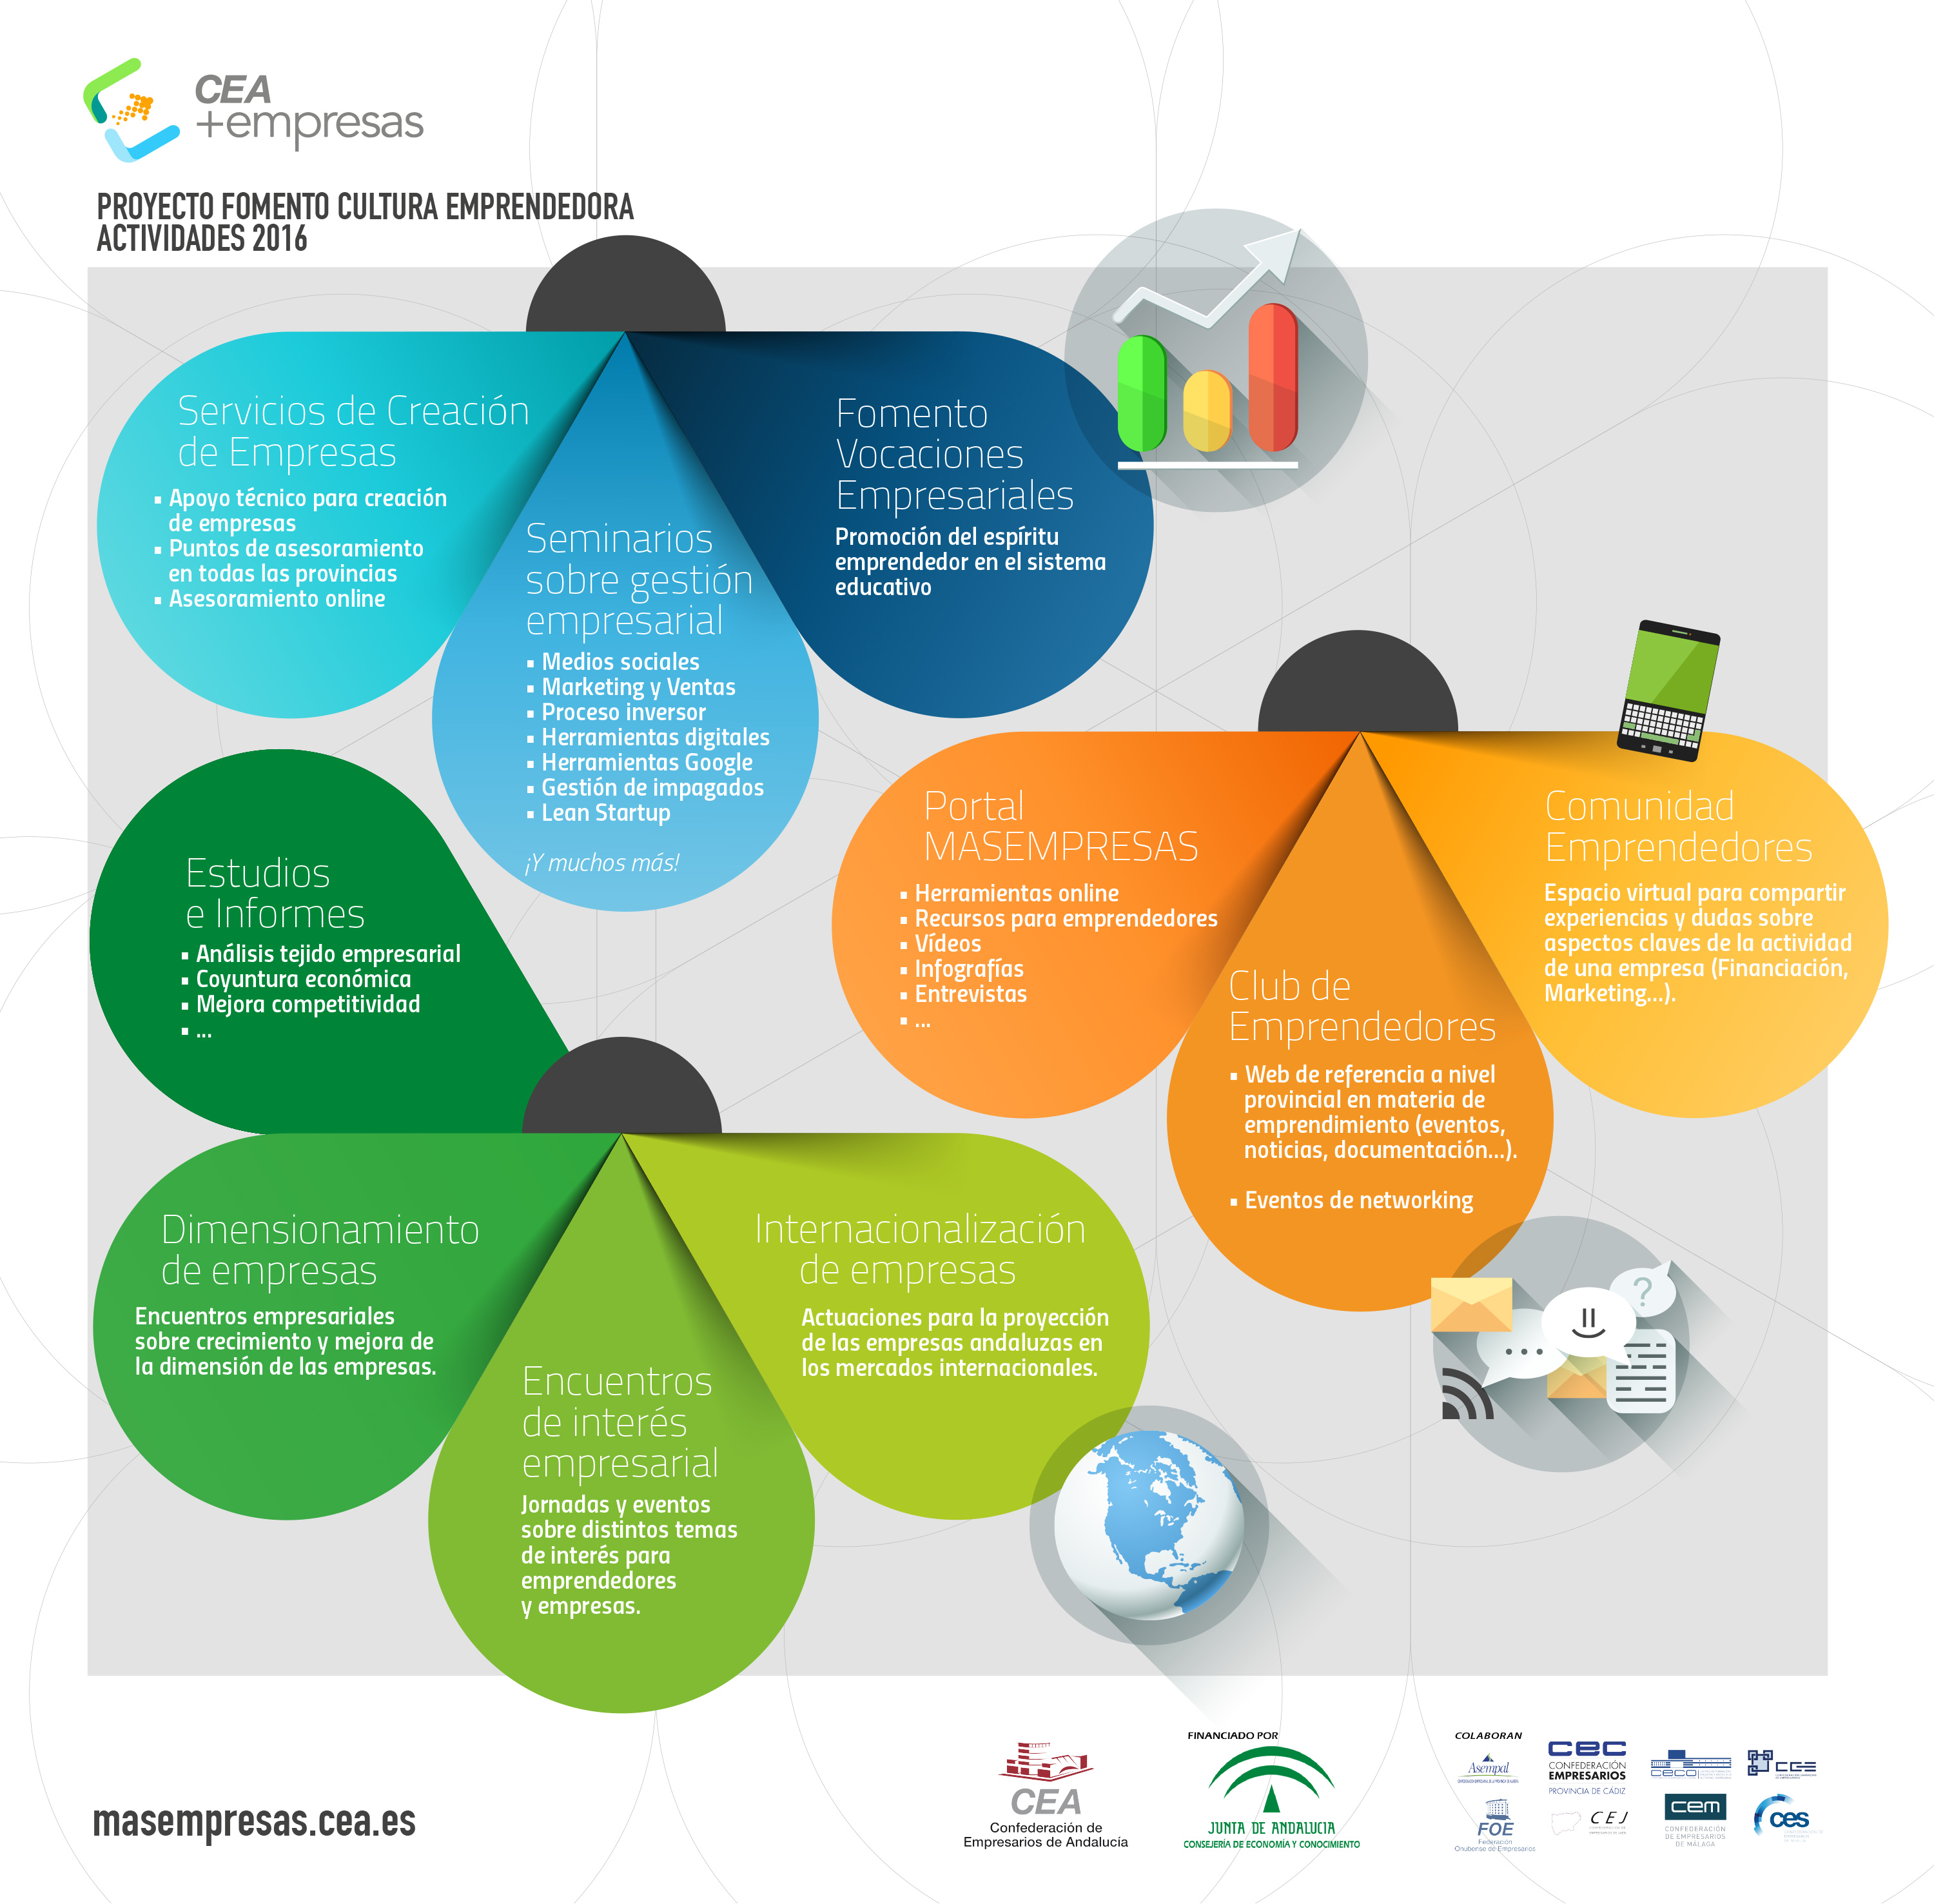 Infografía: Proyecto de Fomento de la Cultura Emprendedora CEA+Empresas - Actividades 2016